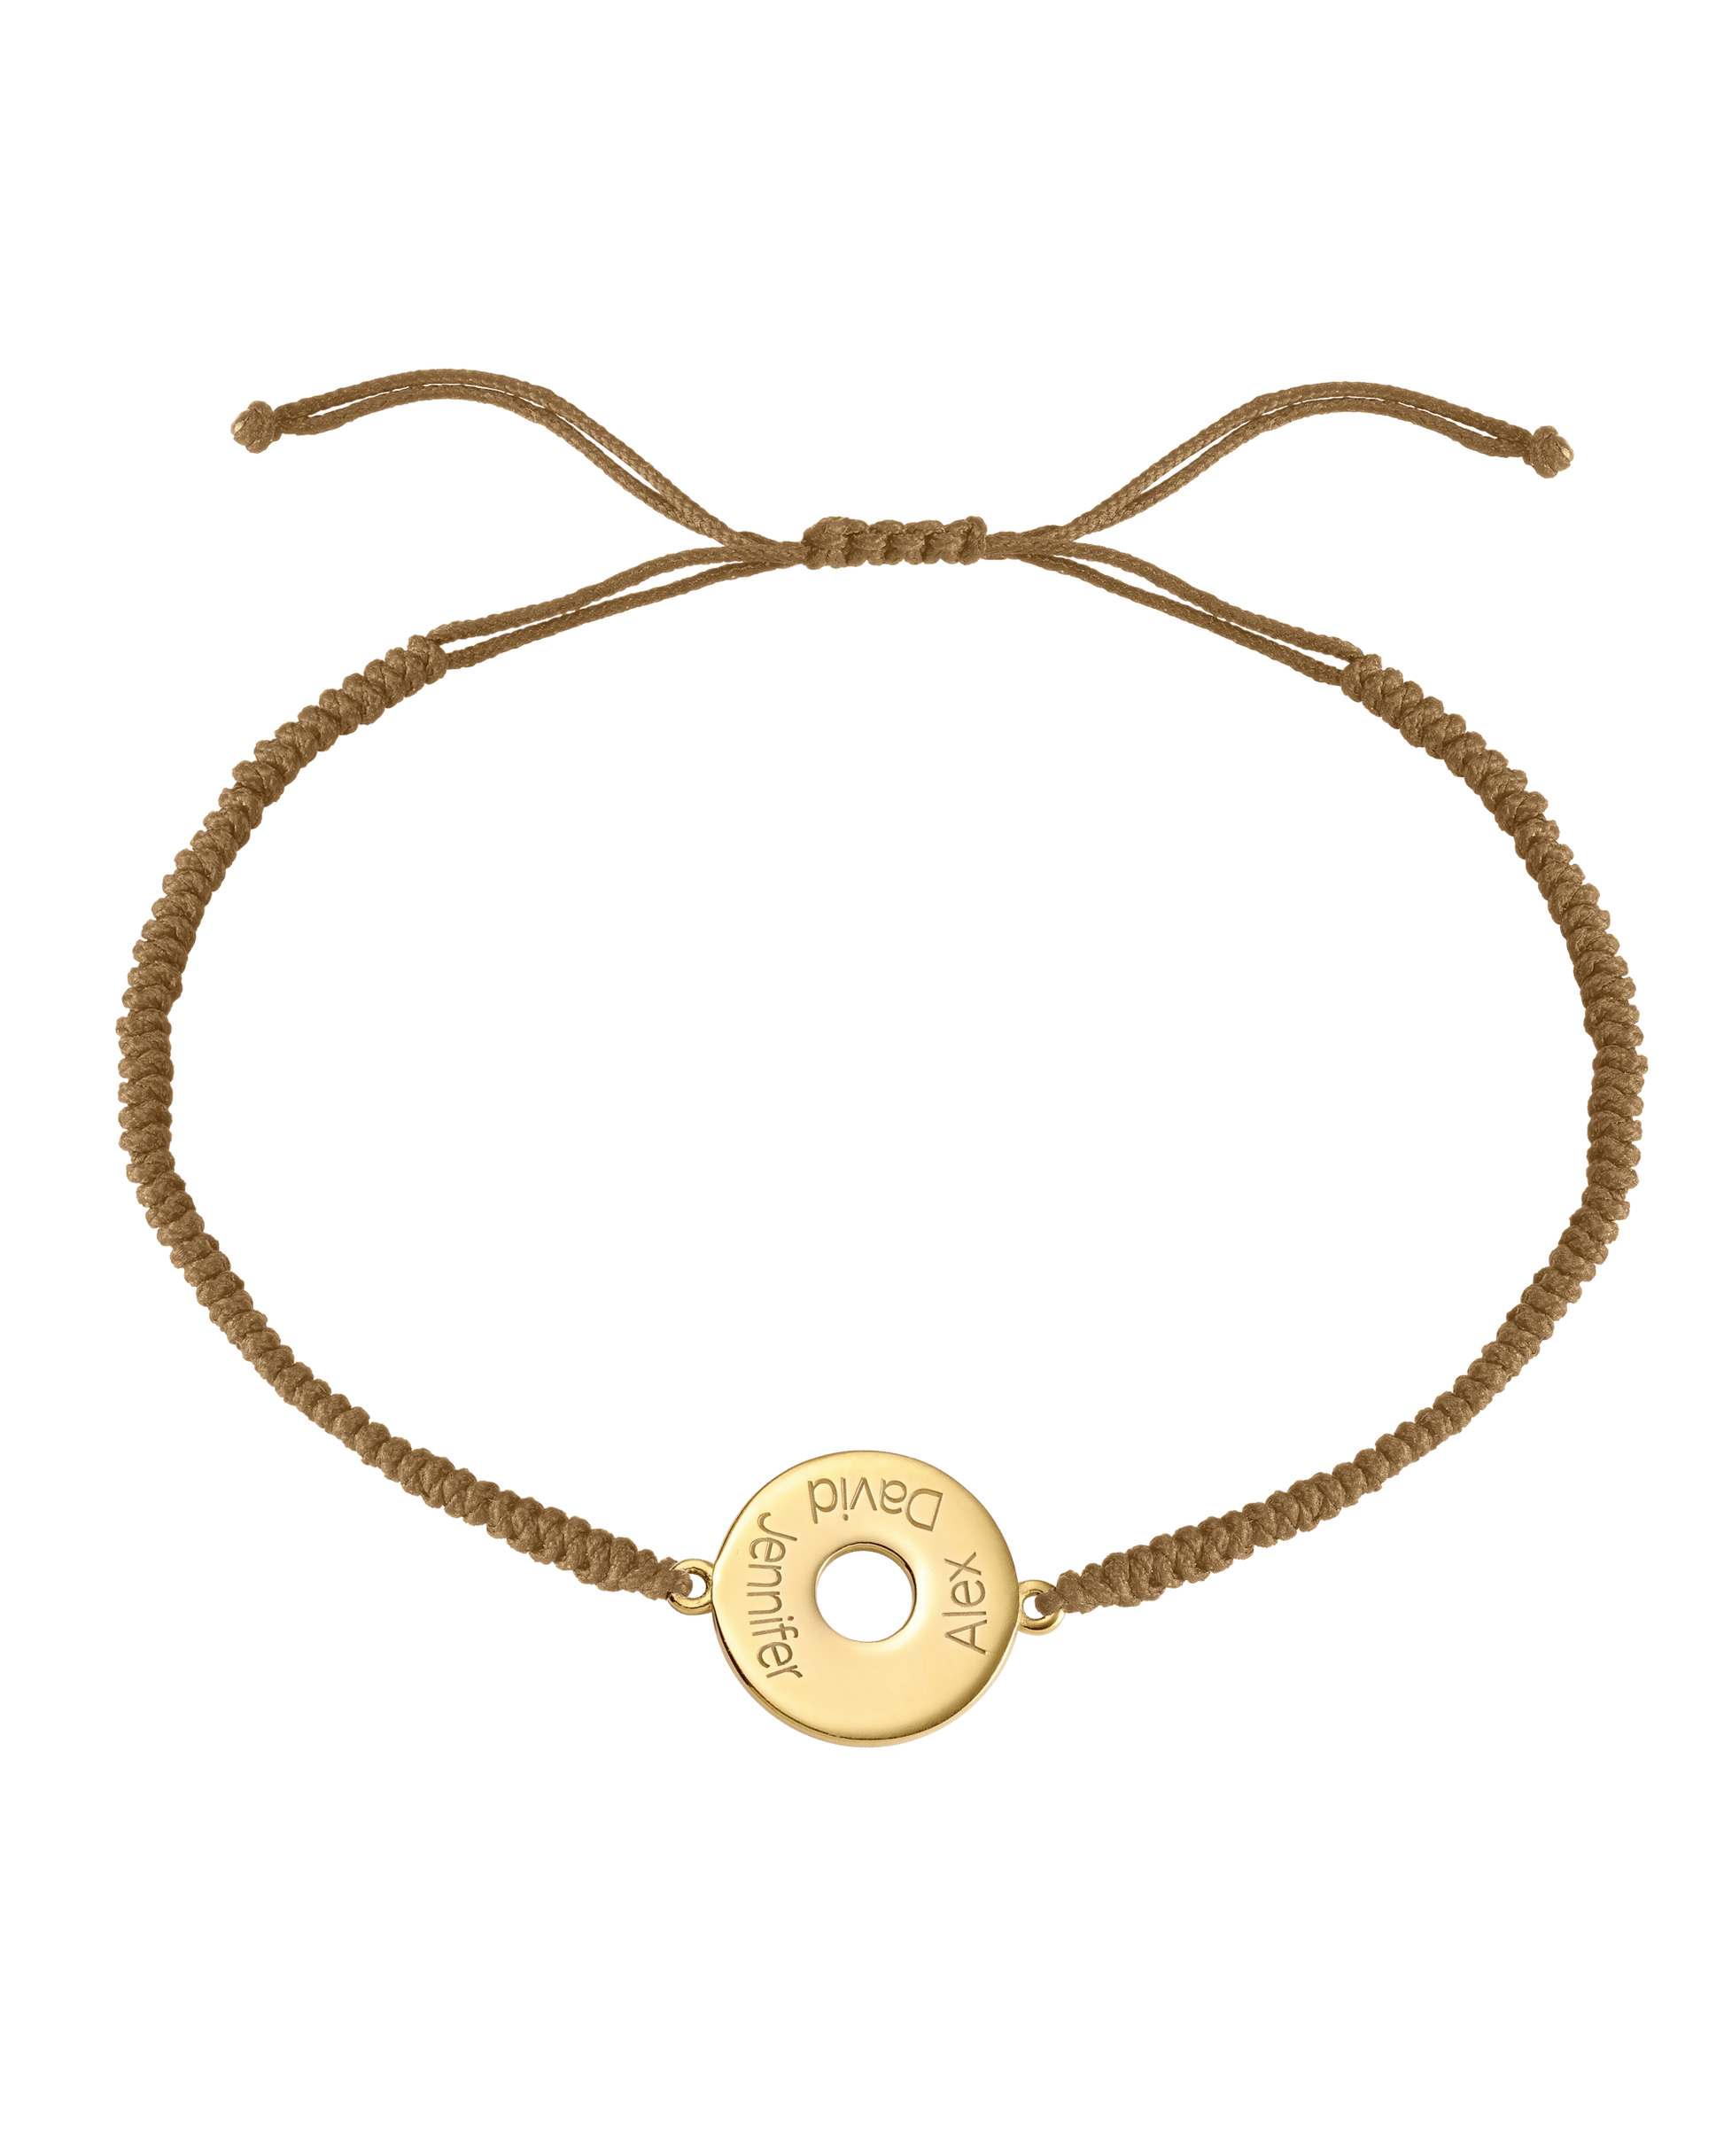 Donut Cord Bracelet - 18K Gold Vermeil Bracelets magal-dev Camel 1 Name Adjustable from 4" to 9"